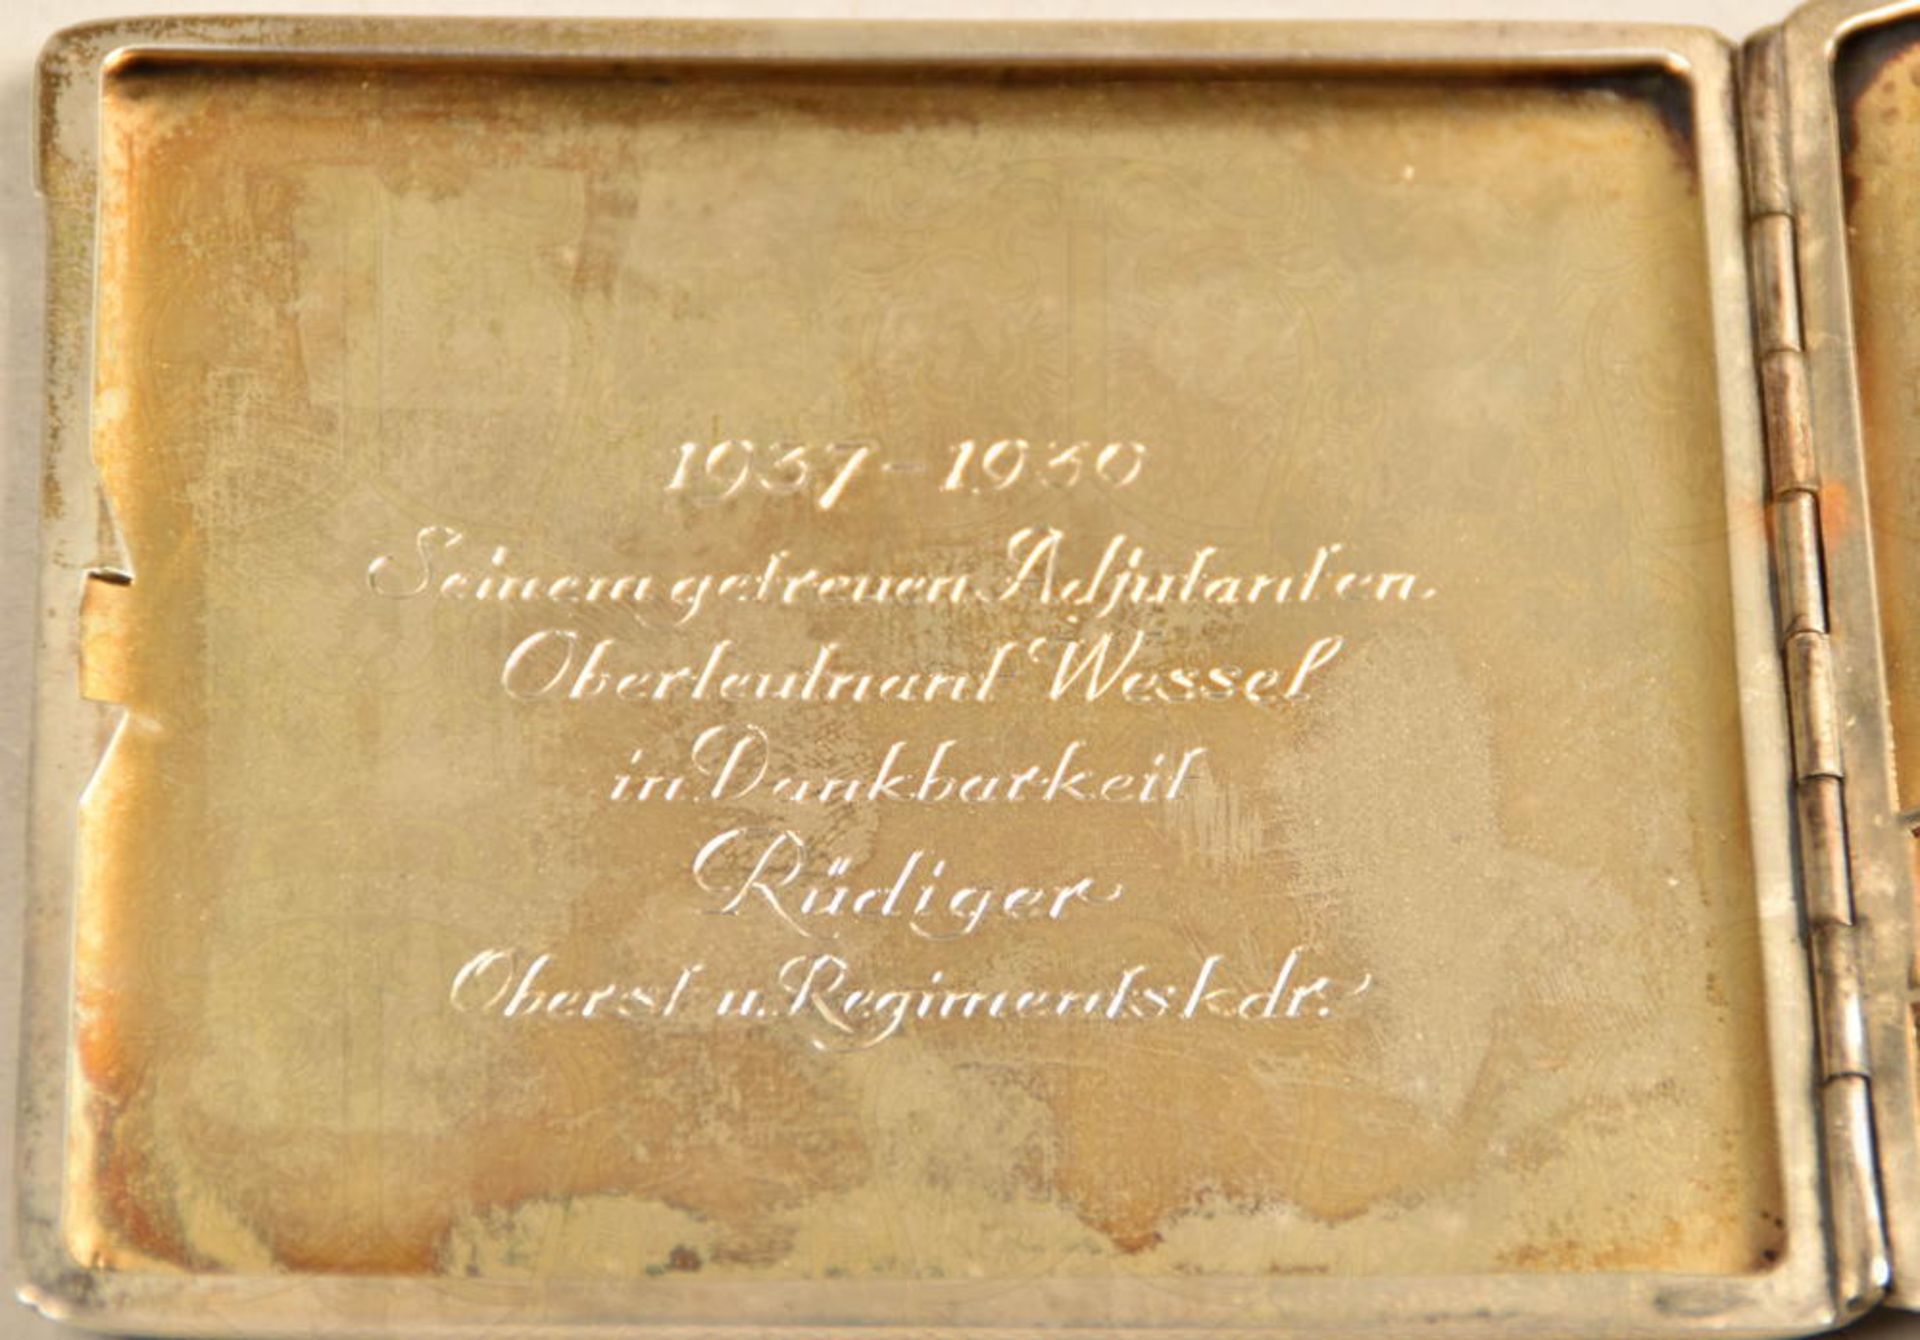 OFFIZIERSGESCHENK-ZIGARETTENETUI GERHARD WESSEL - Image 3 of 6